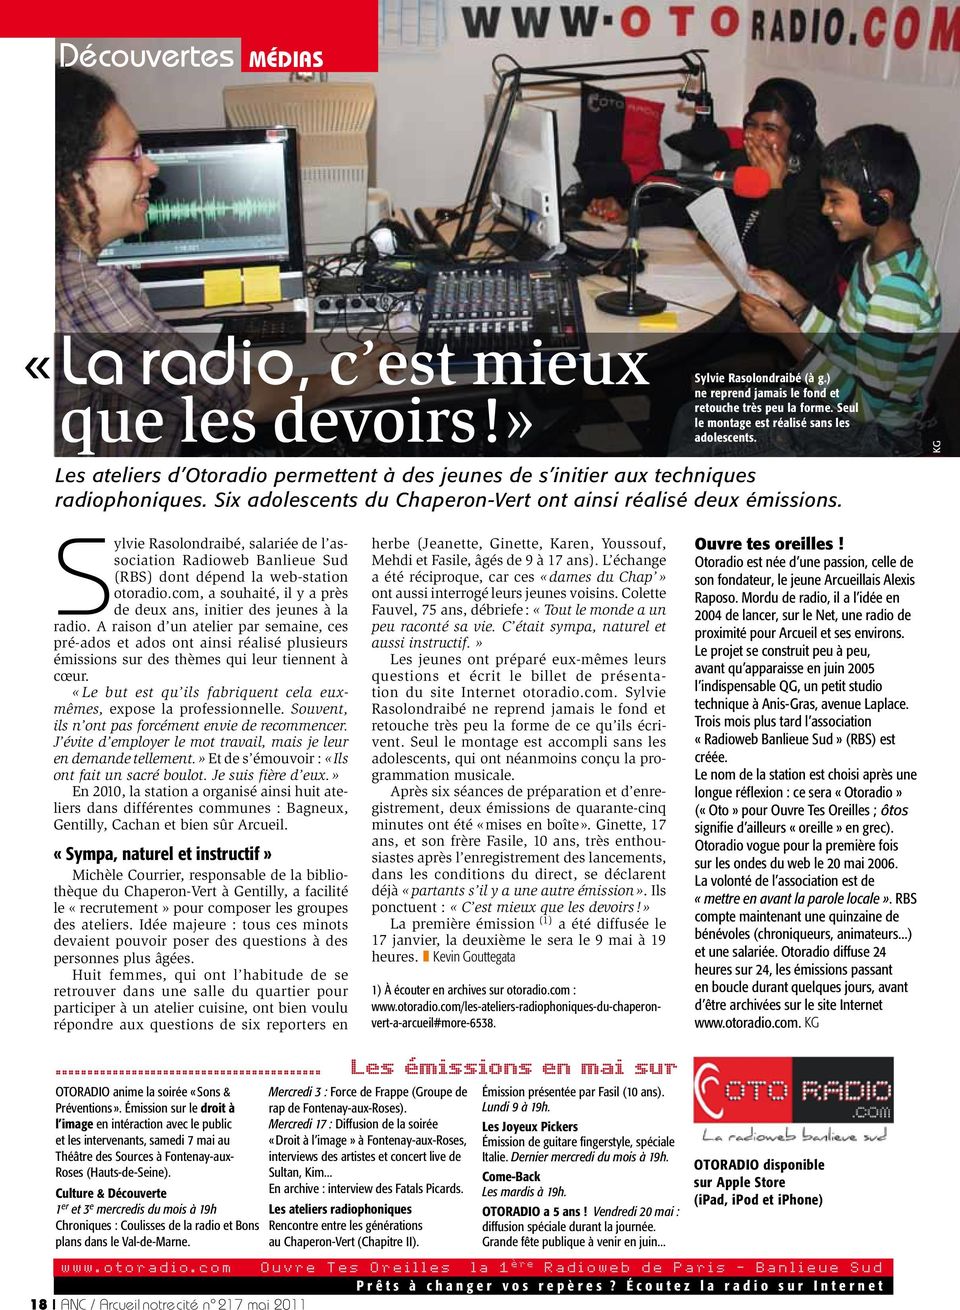 Sylvie Rasolondraibé, salariée de l association Radioweb Banlieue Sud (RBS) dont dépend la web-station otoradio.com, a souhaité, il y a près de deux ans, initier des jeunes à la radio.